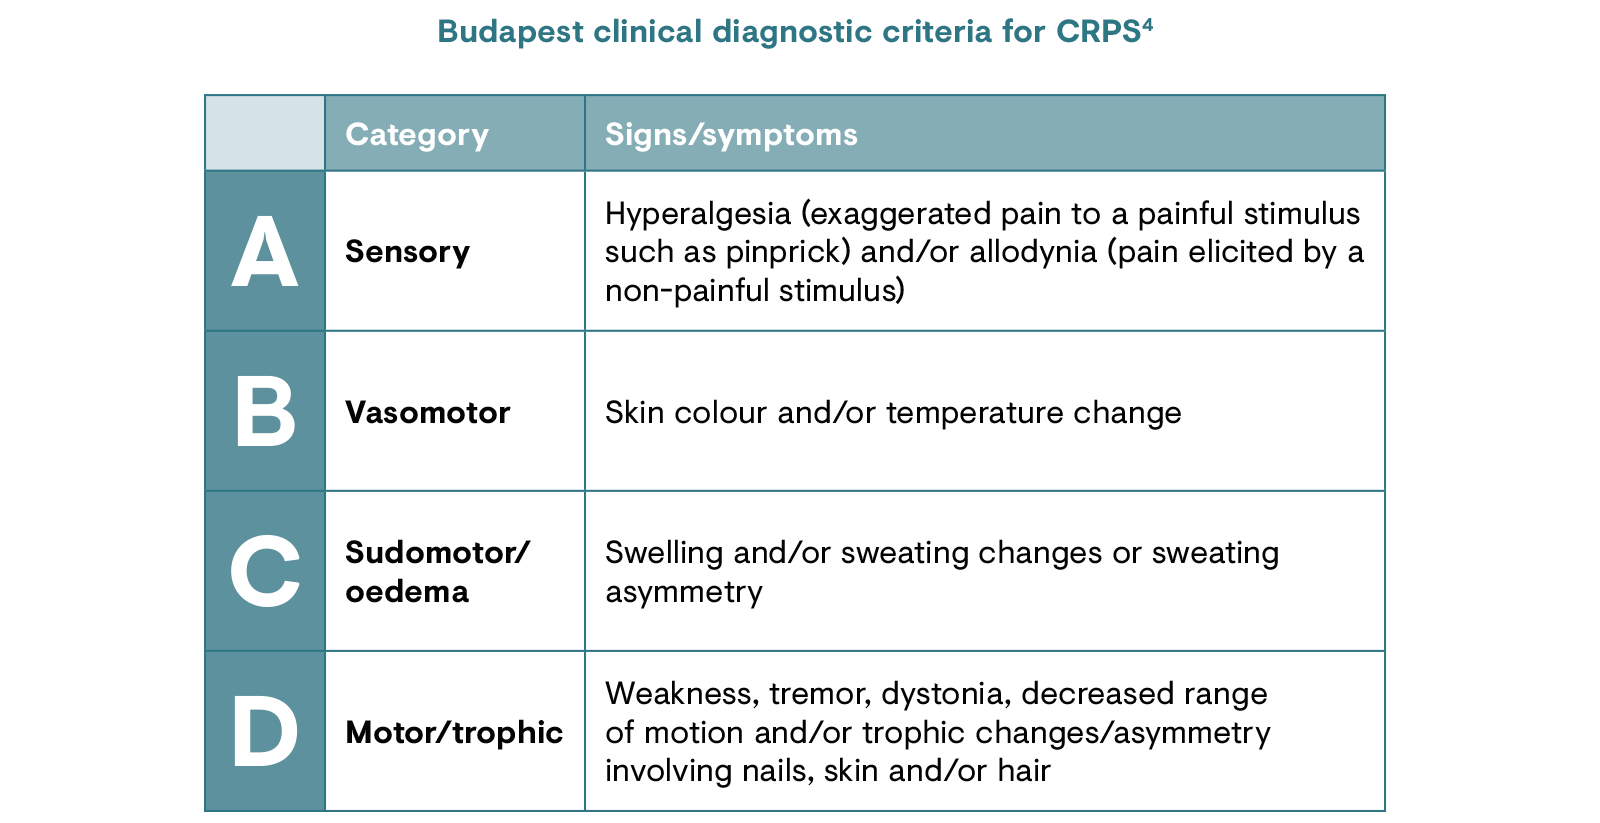 Budapest clinical diagnostic criteria for CRPS